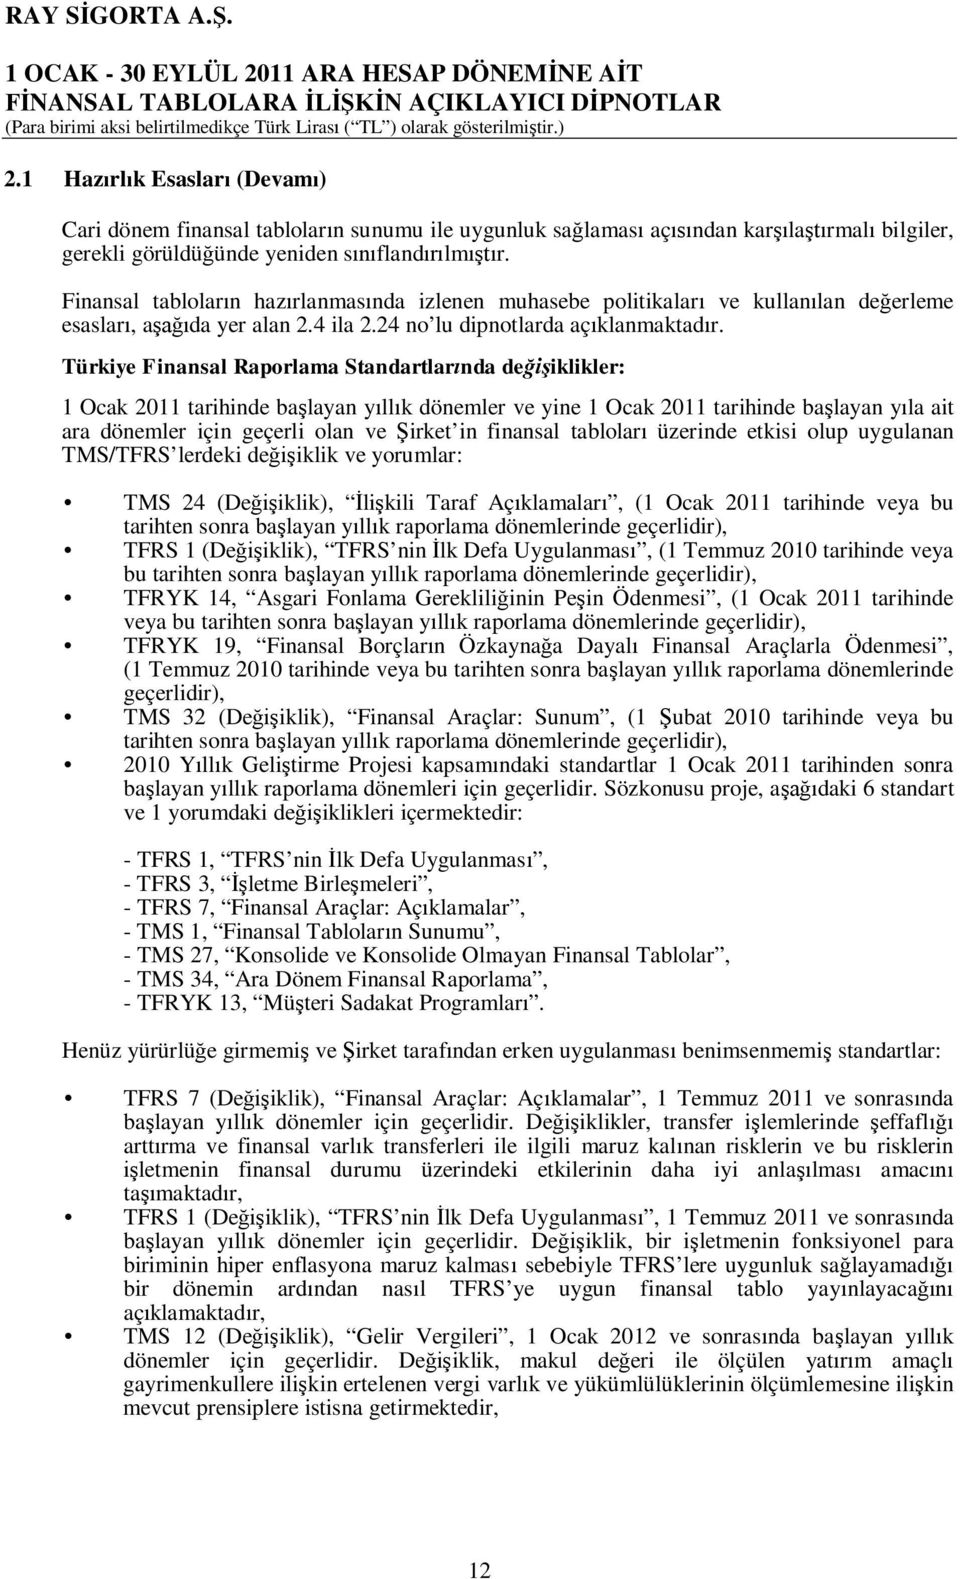 Türkiye Finansal Raporlama Standartlar nda de iklikler: 1 Ocak 2011 tarihinde ba layan y ll k dönemler ve yine 1 Ocak 2011 tarihinde ba layan y la ait ara dönemler için geçerli olan ve irket in